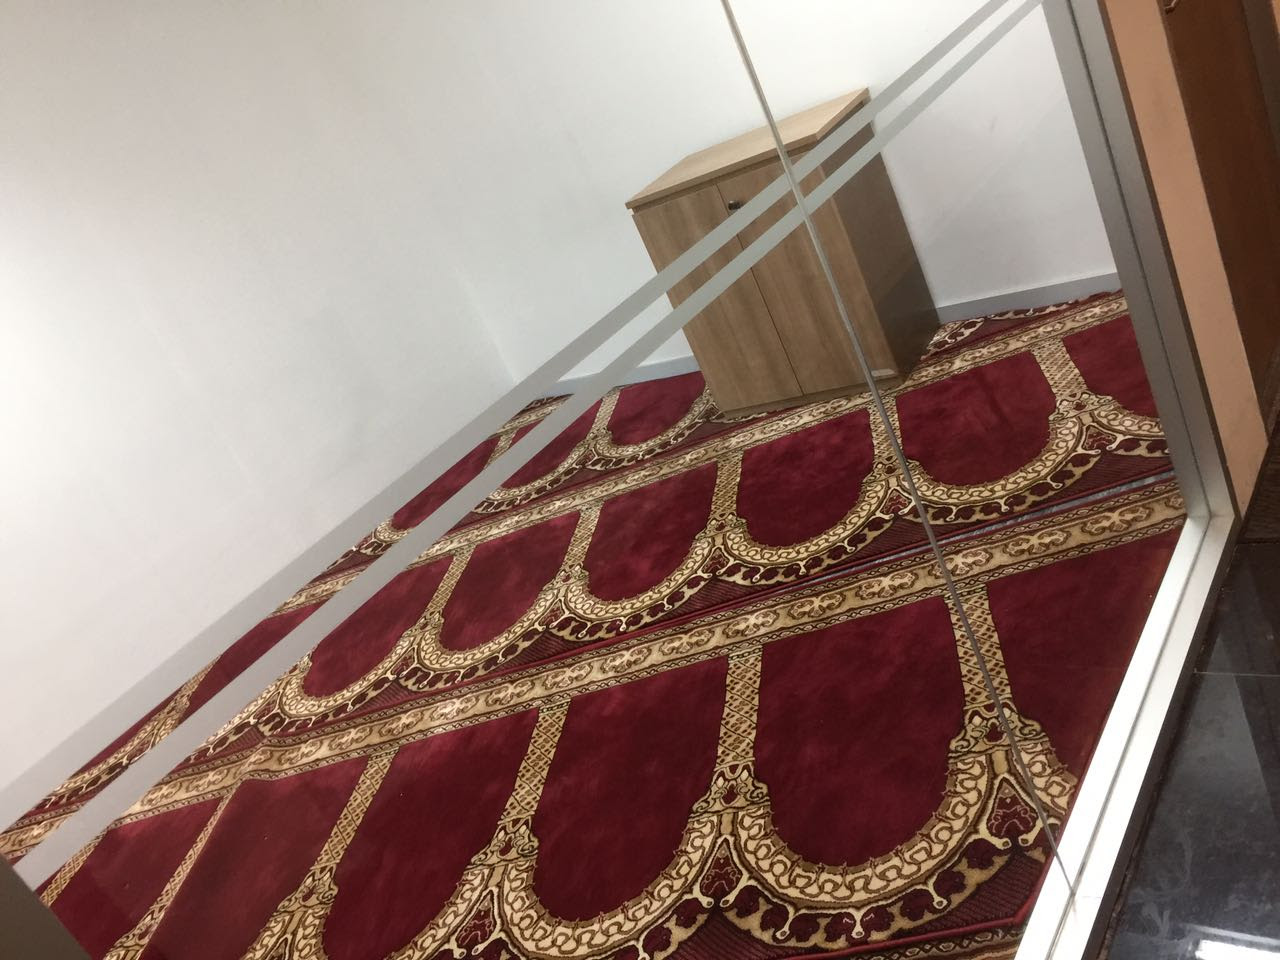  Jual Karpet masjid turki Al Husna Pusat Kebutuhan Masjid